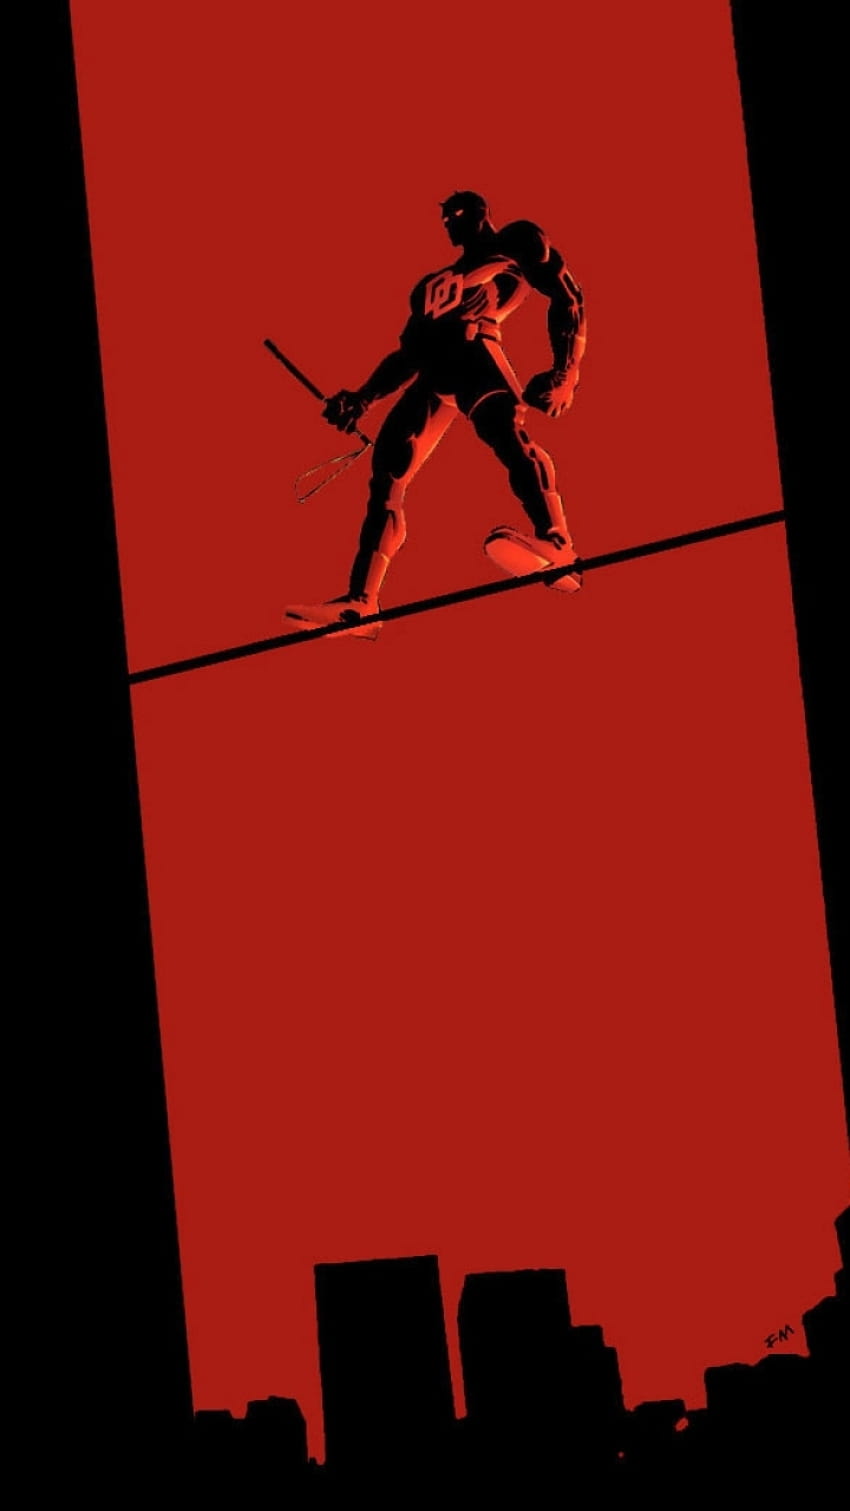 Venom in Dark iPhone Wallpaper  iPhone Wallpapers  Daredevil Marvel  daredevil Marvel